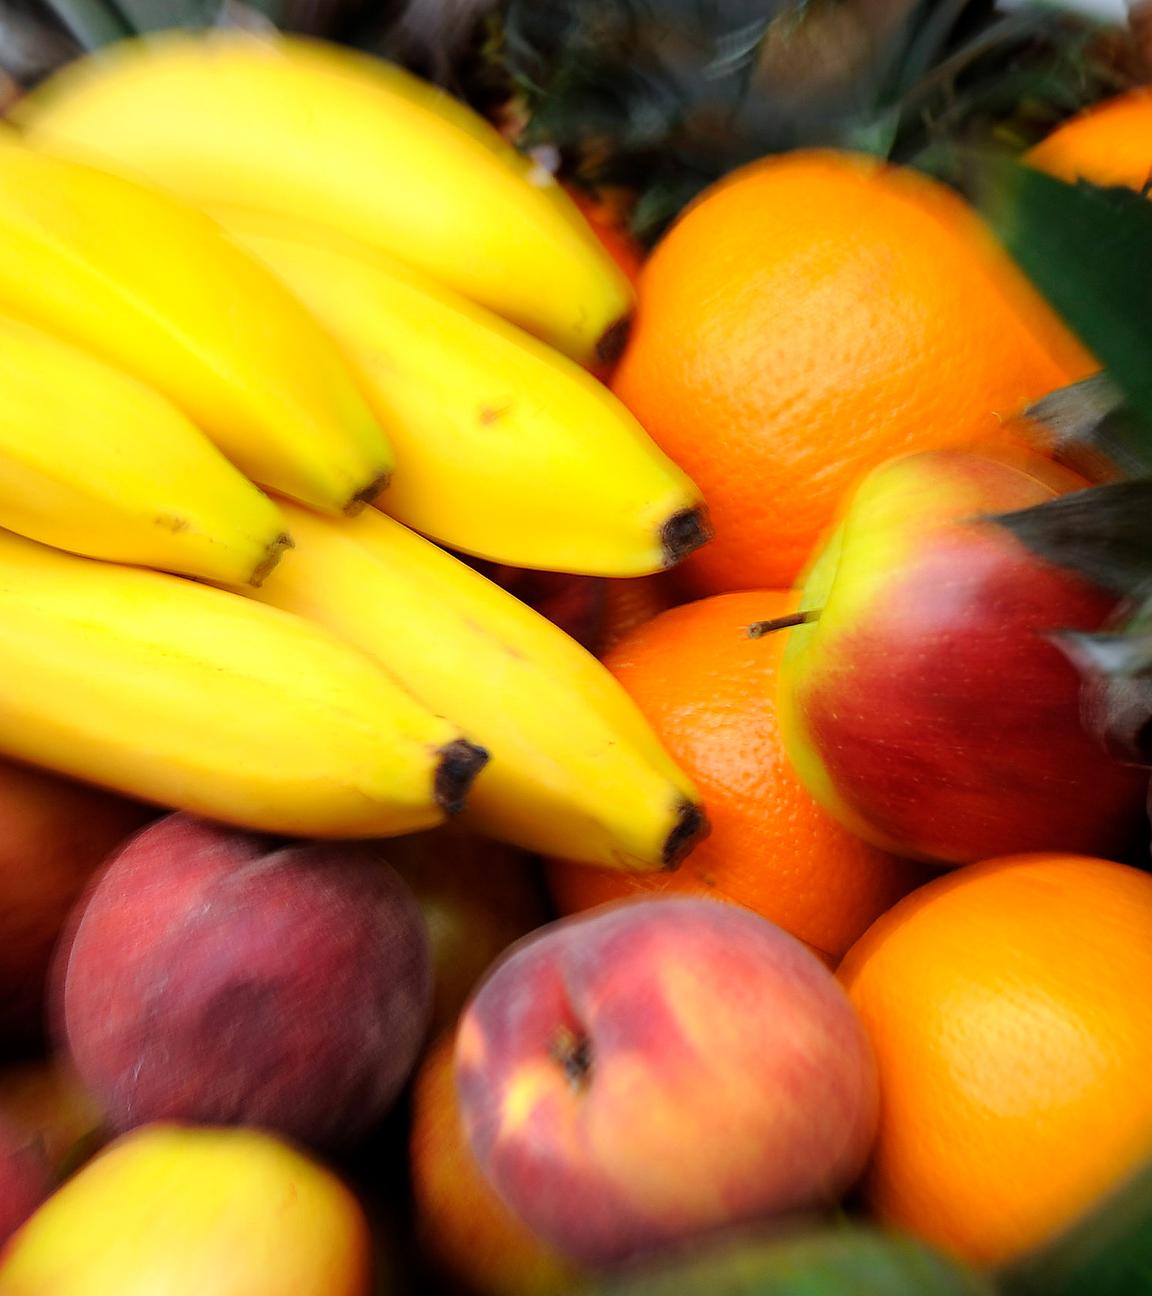 Ein Obstkorb mit Bananen, Äpfeln, Gurken, Orangen und Ananas, aufgenommen am 10.08.2013 beim «Vegan Street Day» in Dortmund (Nordrhein-Westfalen)